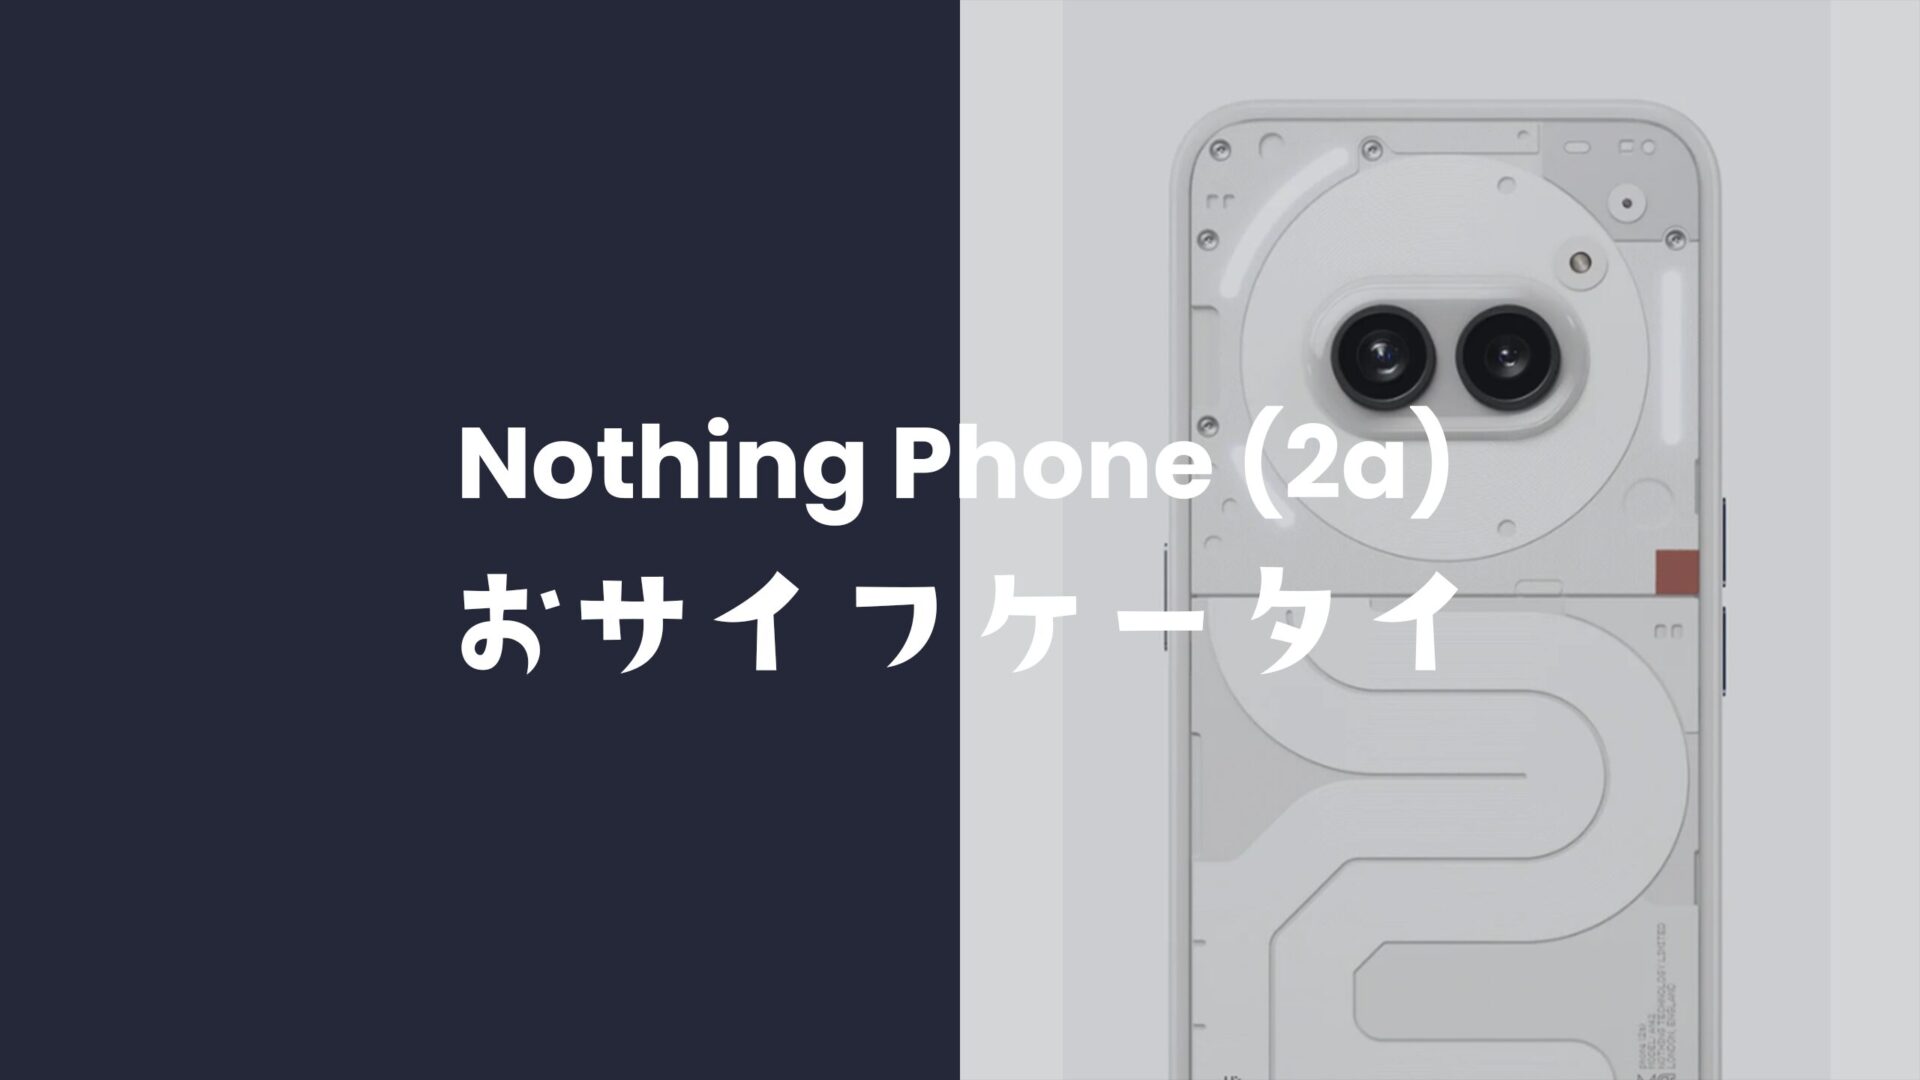 ナッシングフォン(2a)はおサイフケータイ対応。SuicaやPASMOも使える。のサムネイル画像